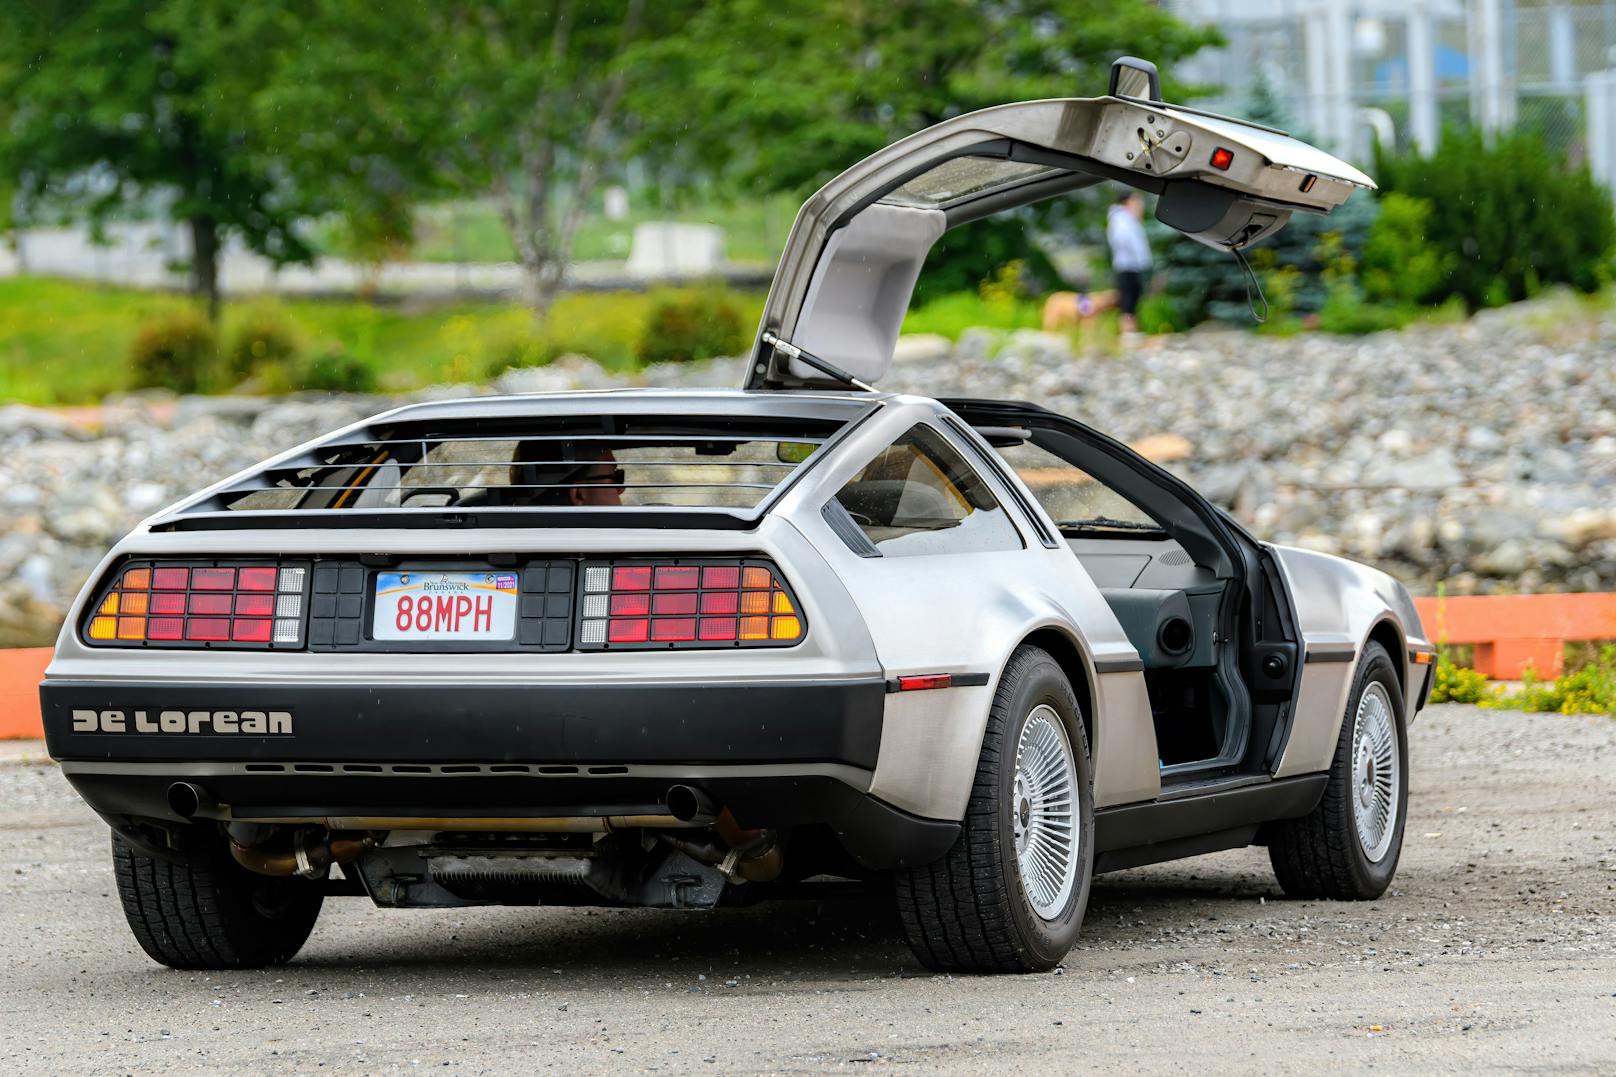 Mit einem solchen "DeLorean" geht es im Film "Zurück in die Zukunft" durch die Zeit.